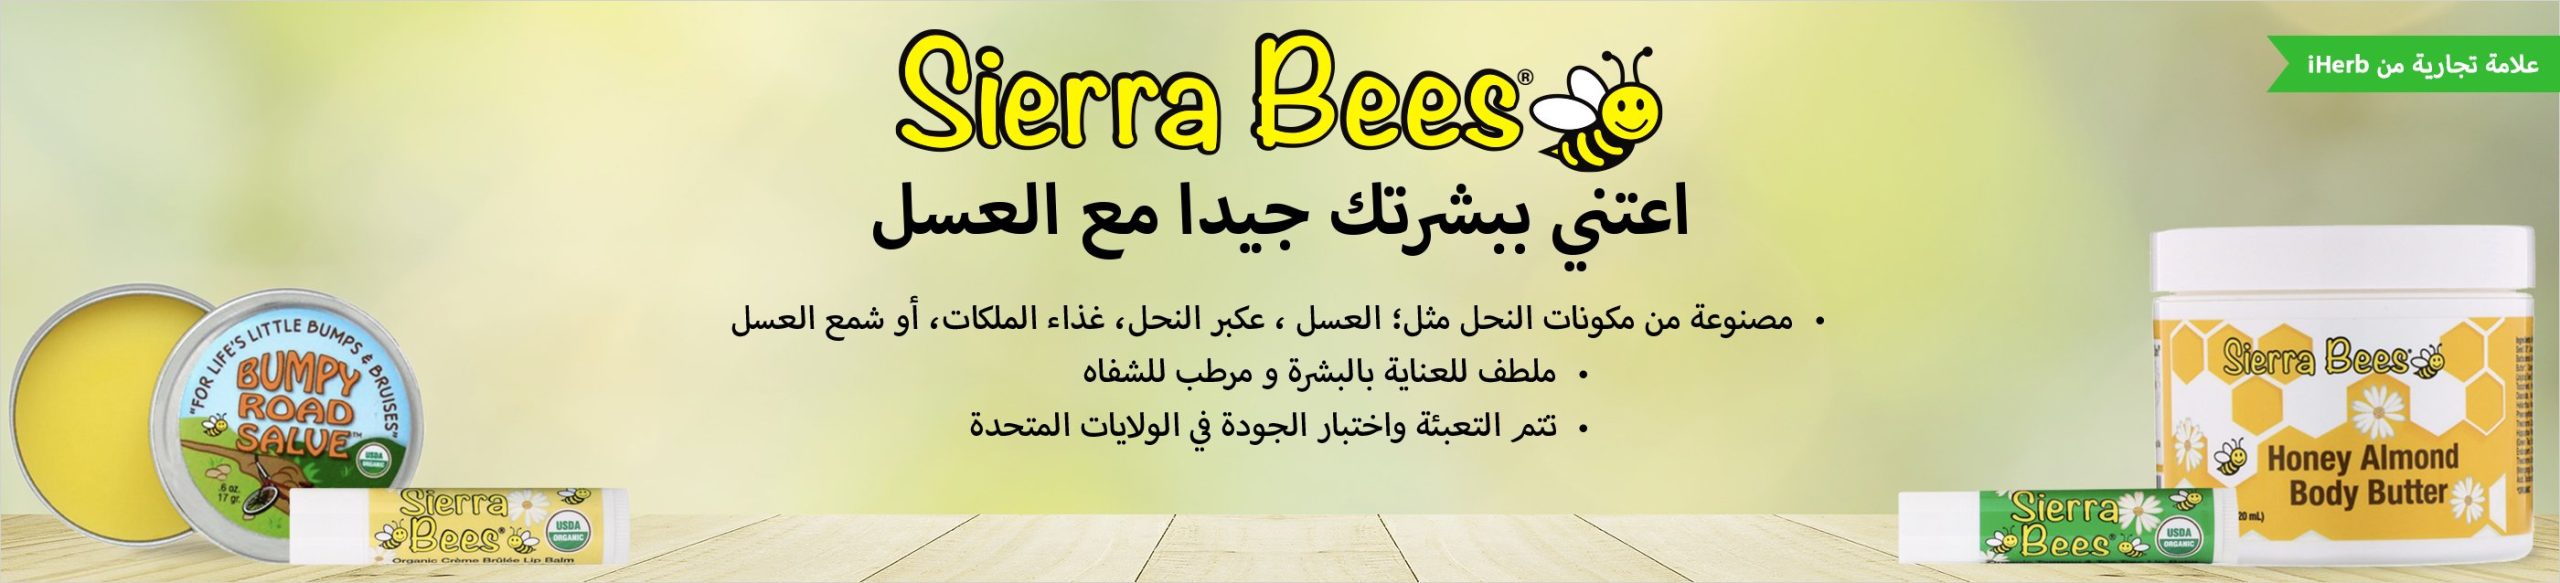 Sierra Bees iherb saudi